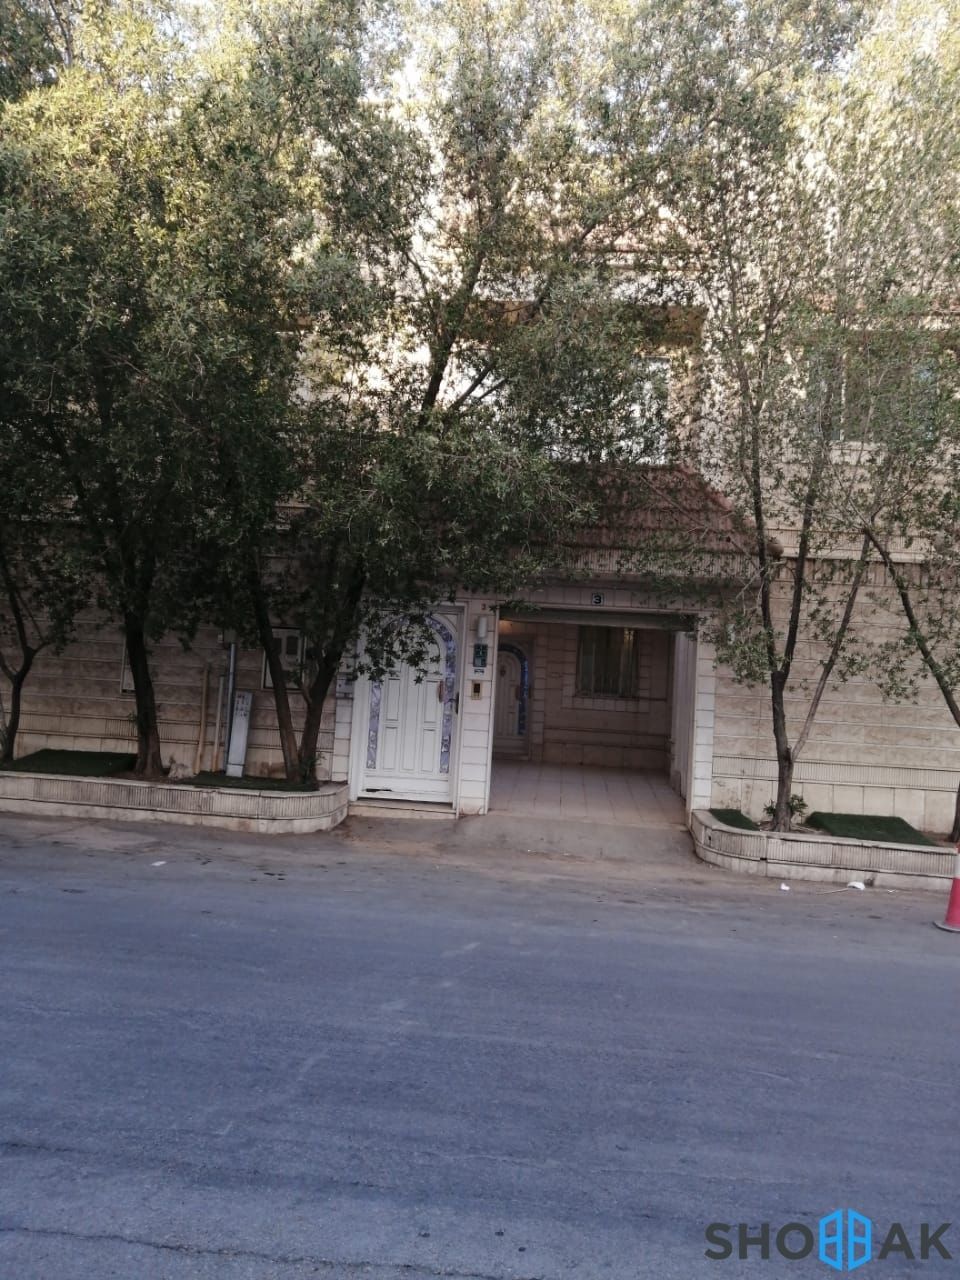 الرياض حي السلمانيه/ شارع عبدالحميد الكاتب  Shobbak Saudi Arabia